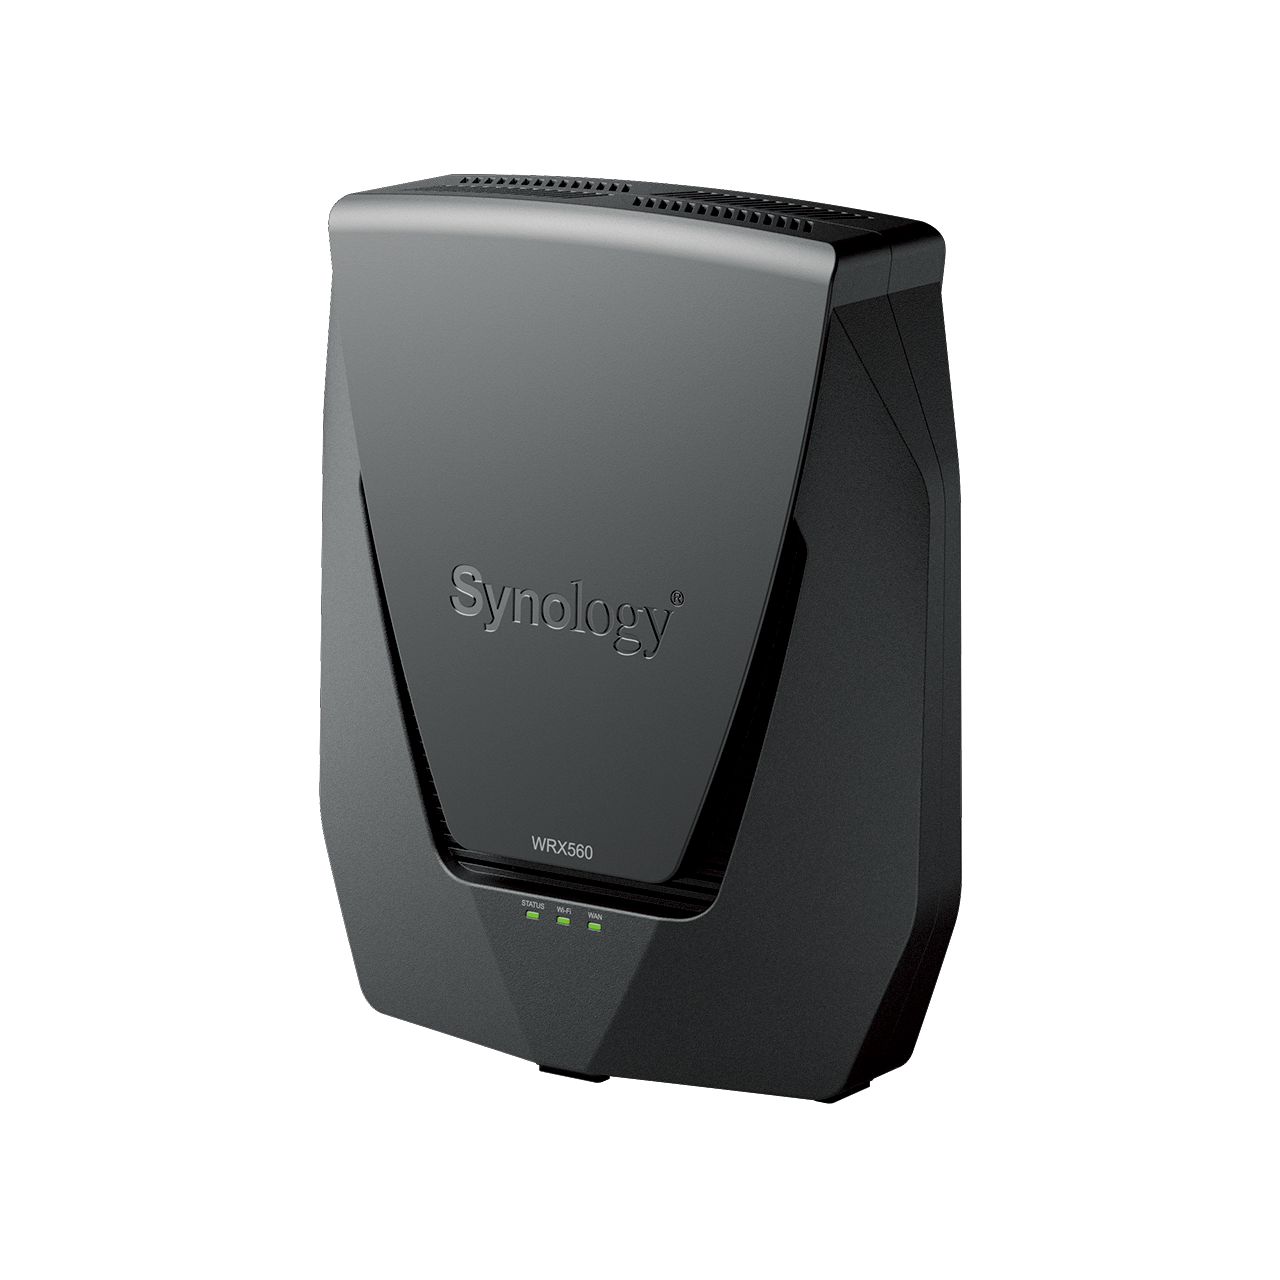 Firma ® Synology® wprowadza na rynek WRX560 — router Wi-Fi 6 dla nowoczesnego inteligentnego domu